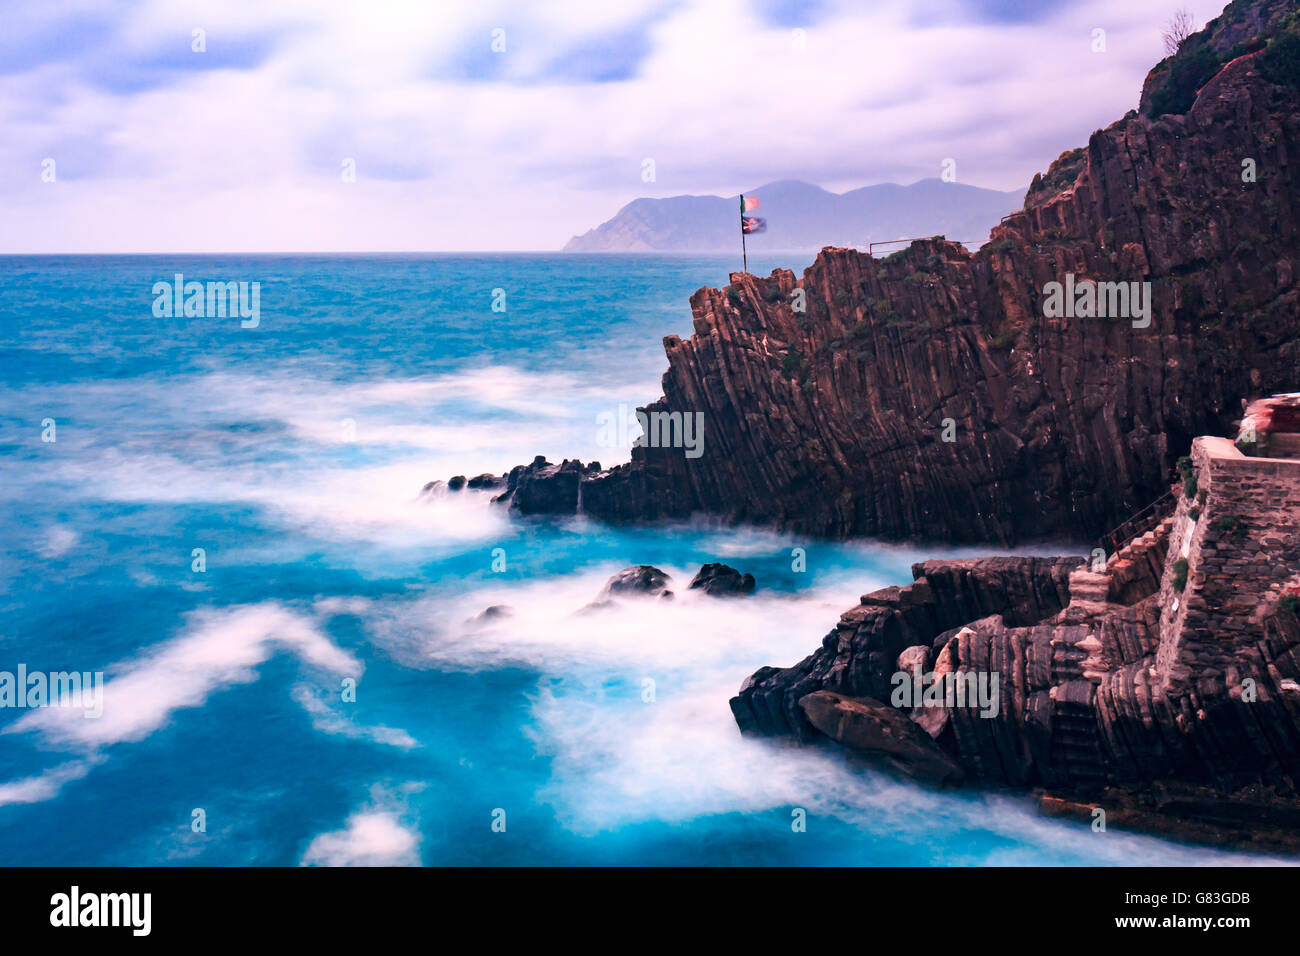 Stormy sea crashing on the coastal rocks in riomaggiore cinque terre italy Stock Photo